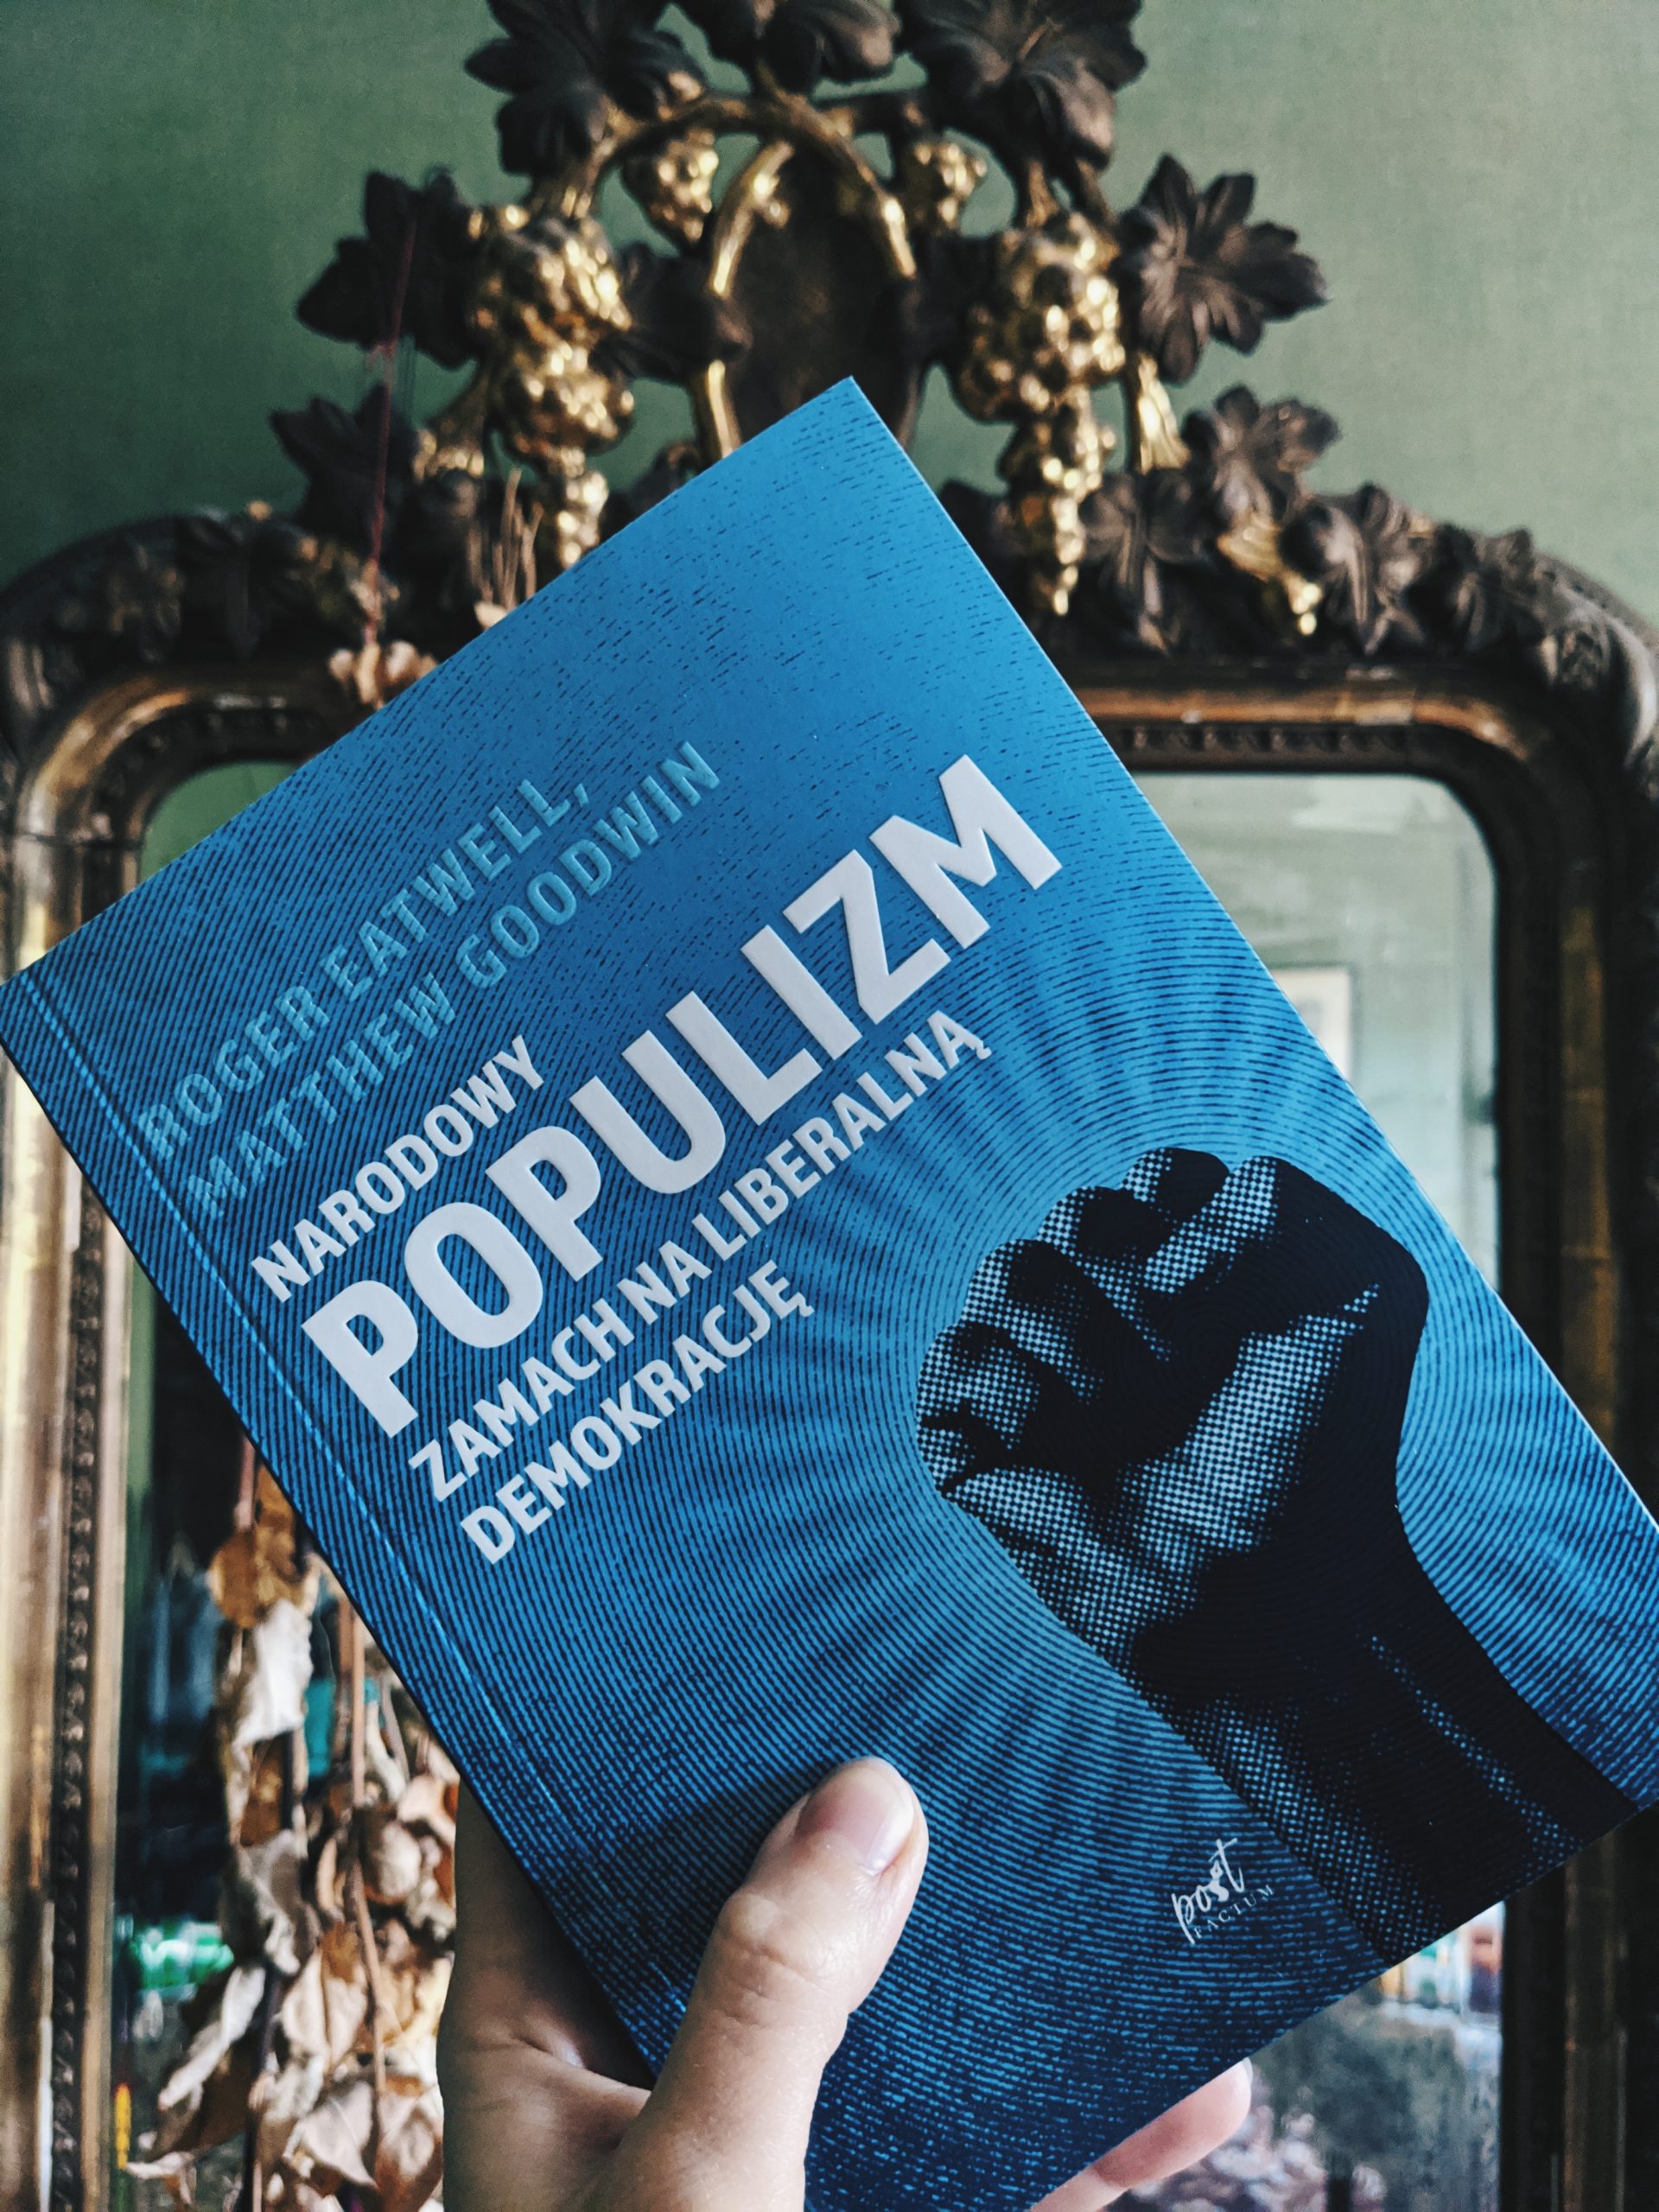 Narodowy populizm. Szukając źródeł